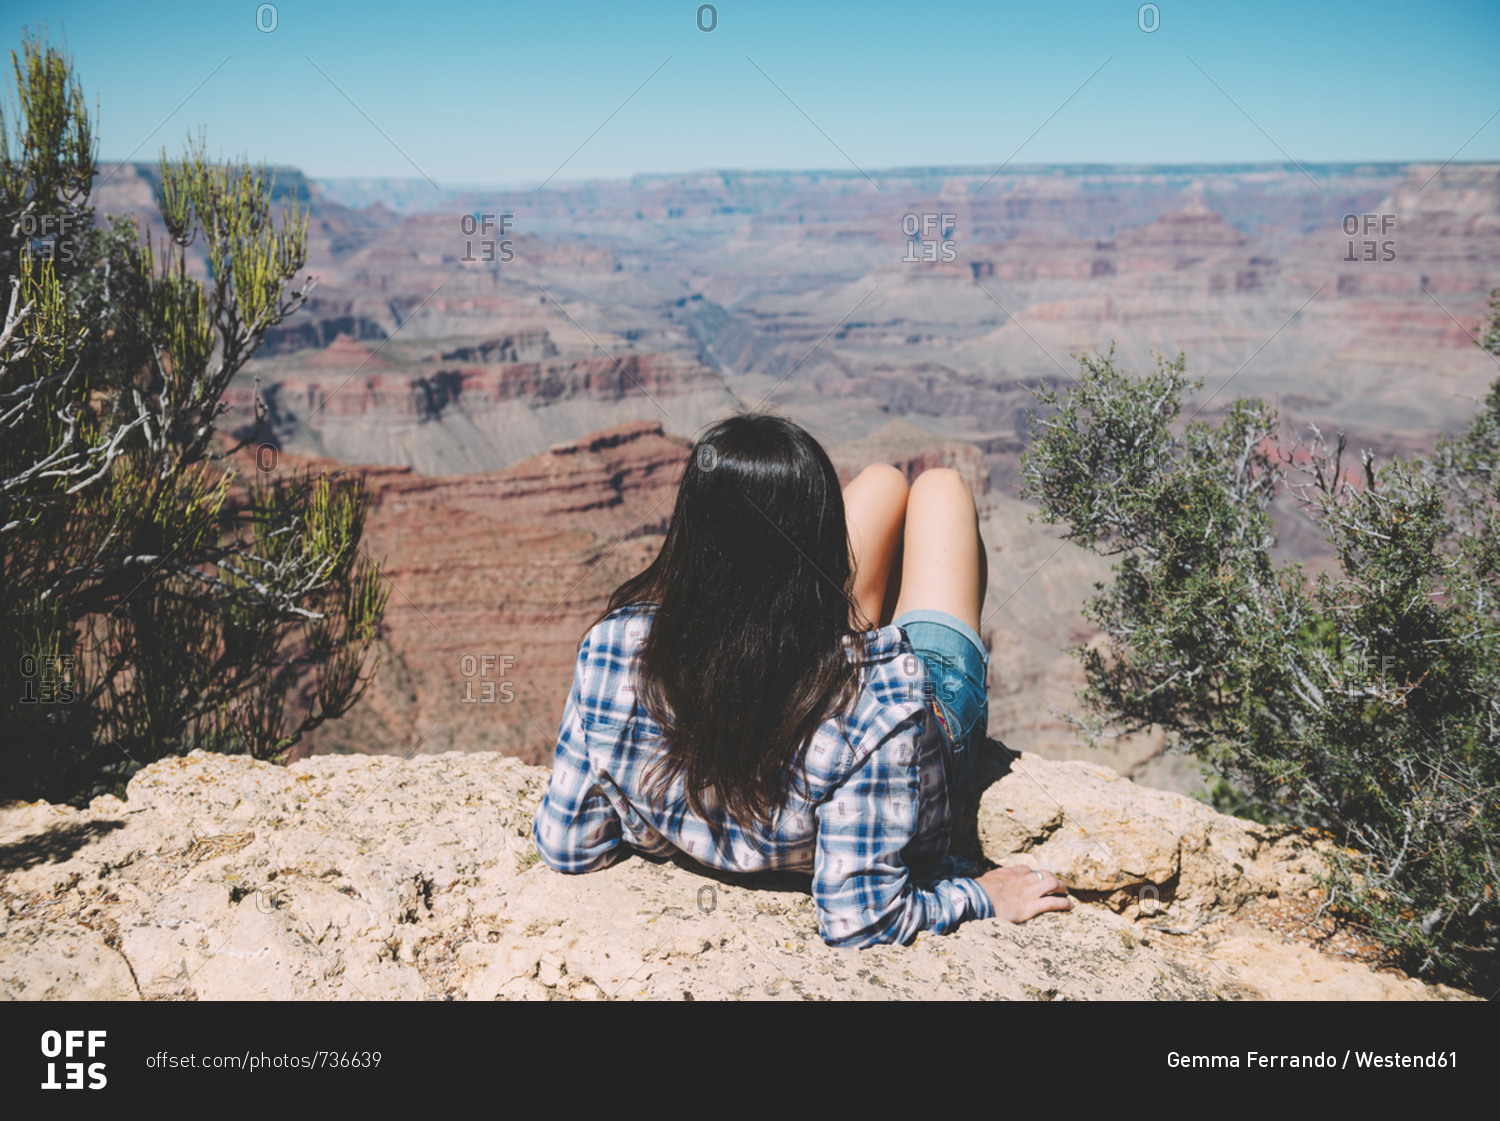 USA- Arizona- Grand Canyon National Park- Grand Canyon- back view of woman looking at view